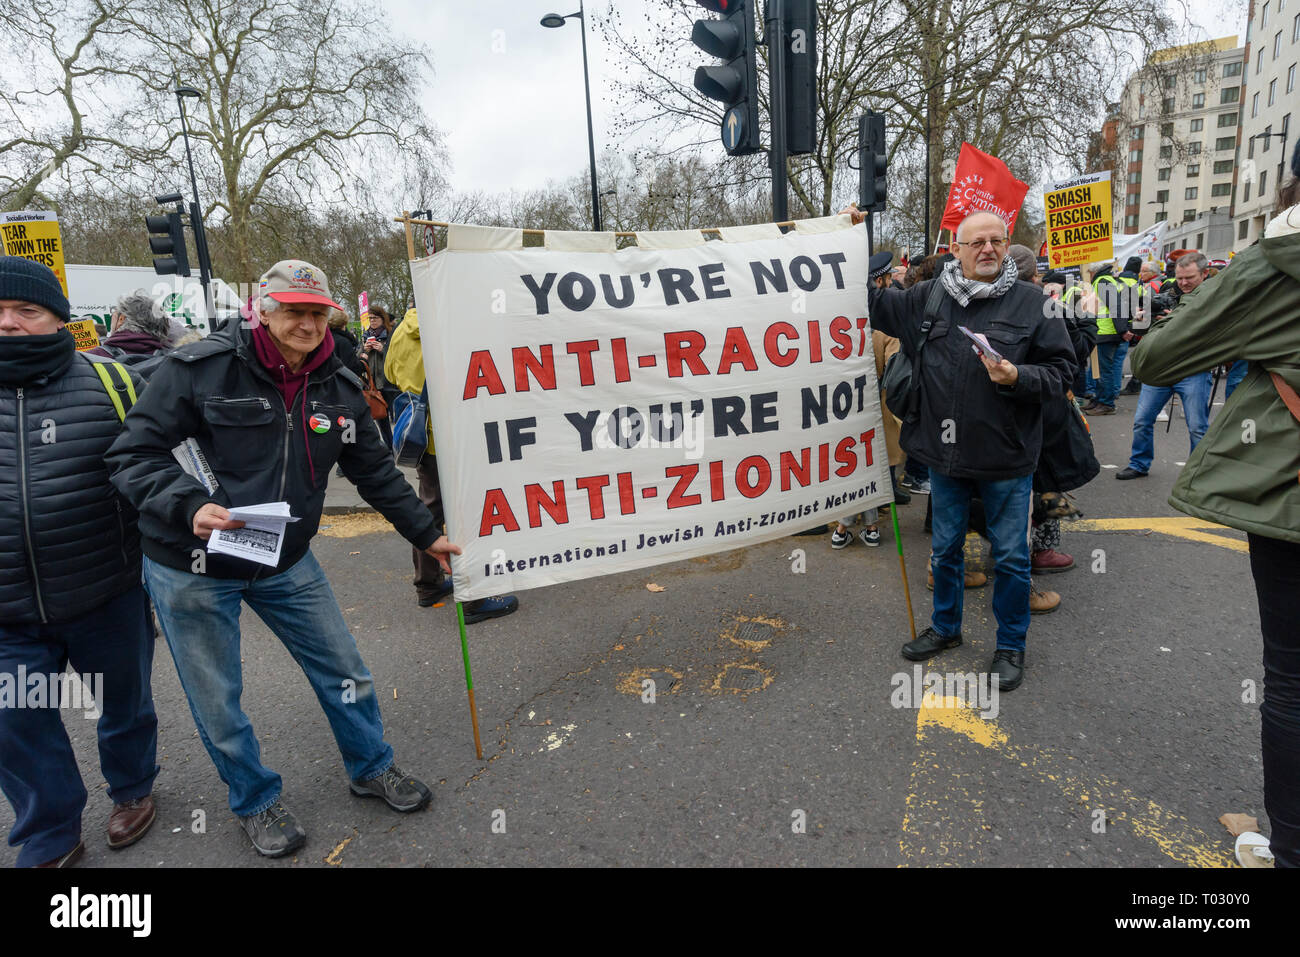 Londres, Royaume-Uni. 16 mars 2019. International Jewish Anti-Zionist Network, la bannière. Des milliers de mars à Londres le jour de l'ONU contre le racisme de dire non au racisme, Non au fascisme" et que "Les réfugiés sont les bienvenus ici", à faire preuve de solidarité avec les victimes d'attaques racistes dont yesterdays Christchurch et de s'opposer à l'attaque d'une mosquée les crimes de haine islamophobe et politiques racistes au Royaume-Uni et ailleurs. Les marcheurs se sont réunis à Park Lane où il y avait un certain nombre de discours avant de marcher à un rassemblement à Whitehall. Les marches ont eu lieu dans d'autres villes dans le monde, y compris l'Glasgow et à Cardiff. Peter Marshall Banque D'Images